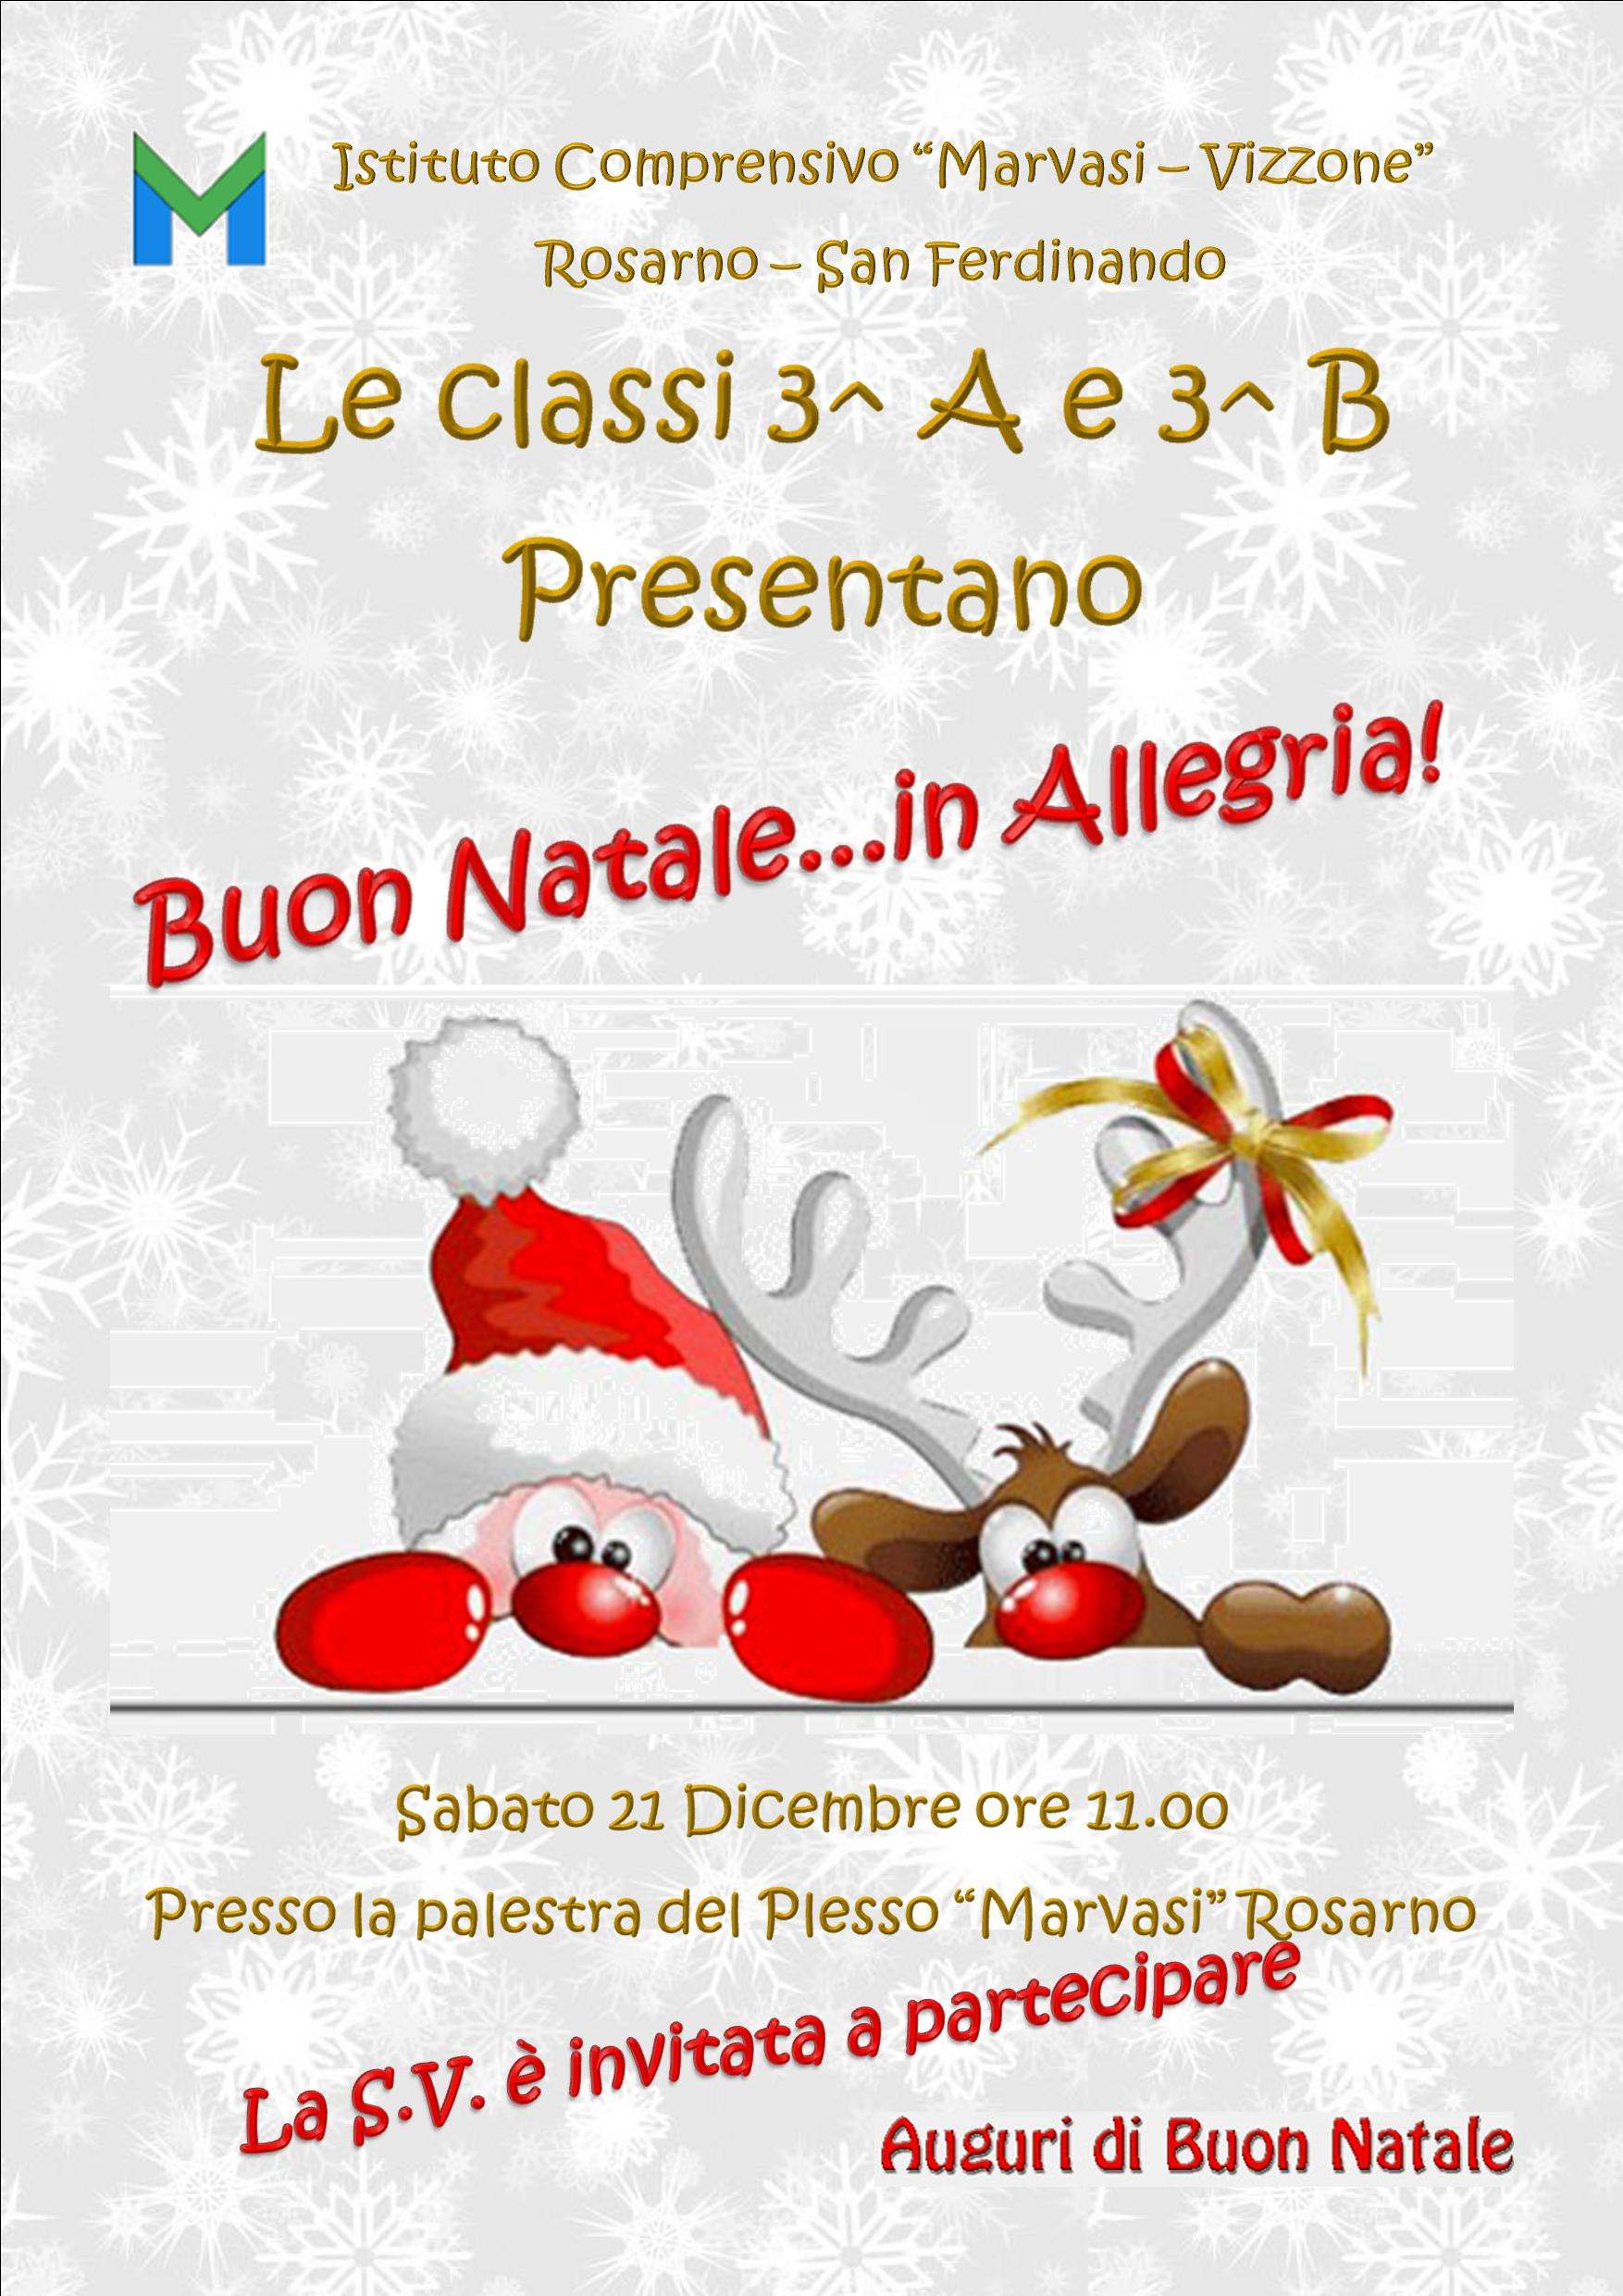 Testo Buon Natale In Allegria.Buon Natale In Allegria Istituto Comprensivo Marvasi Vizzone Scuola Pubblica Rosarno San Ferdinando